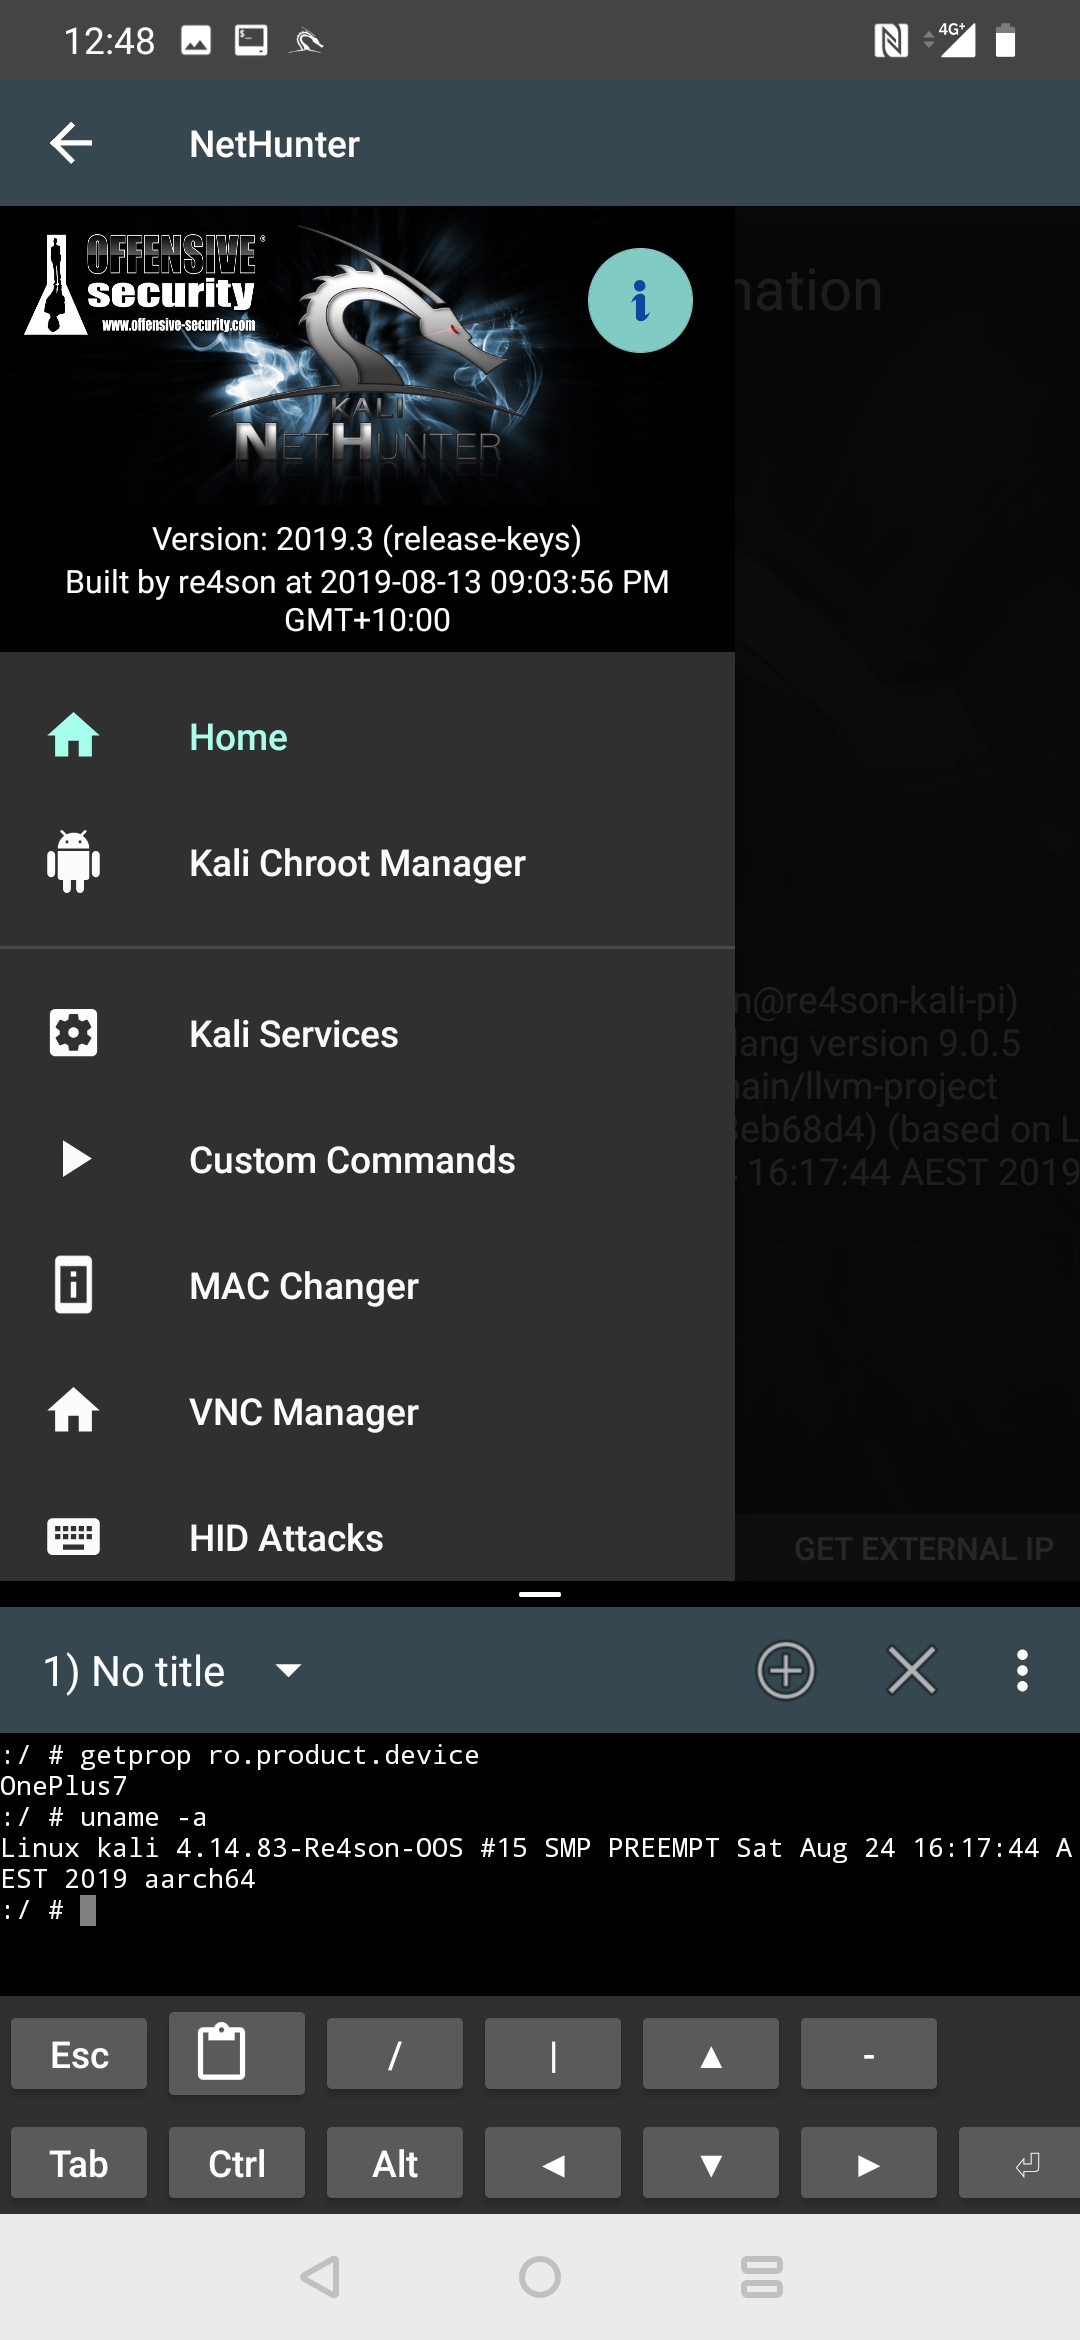 Kali Linux muda para o Linux 5.2 e agora suporta o OnePlus 7